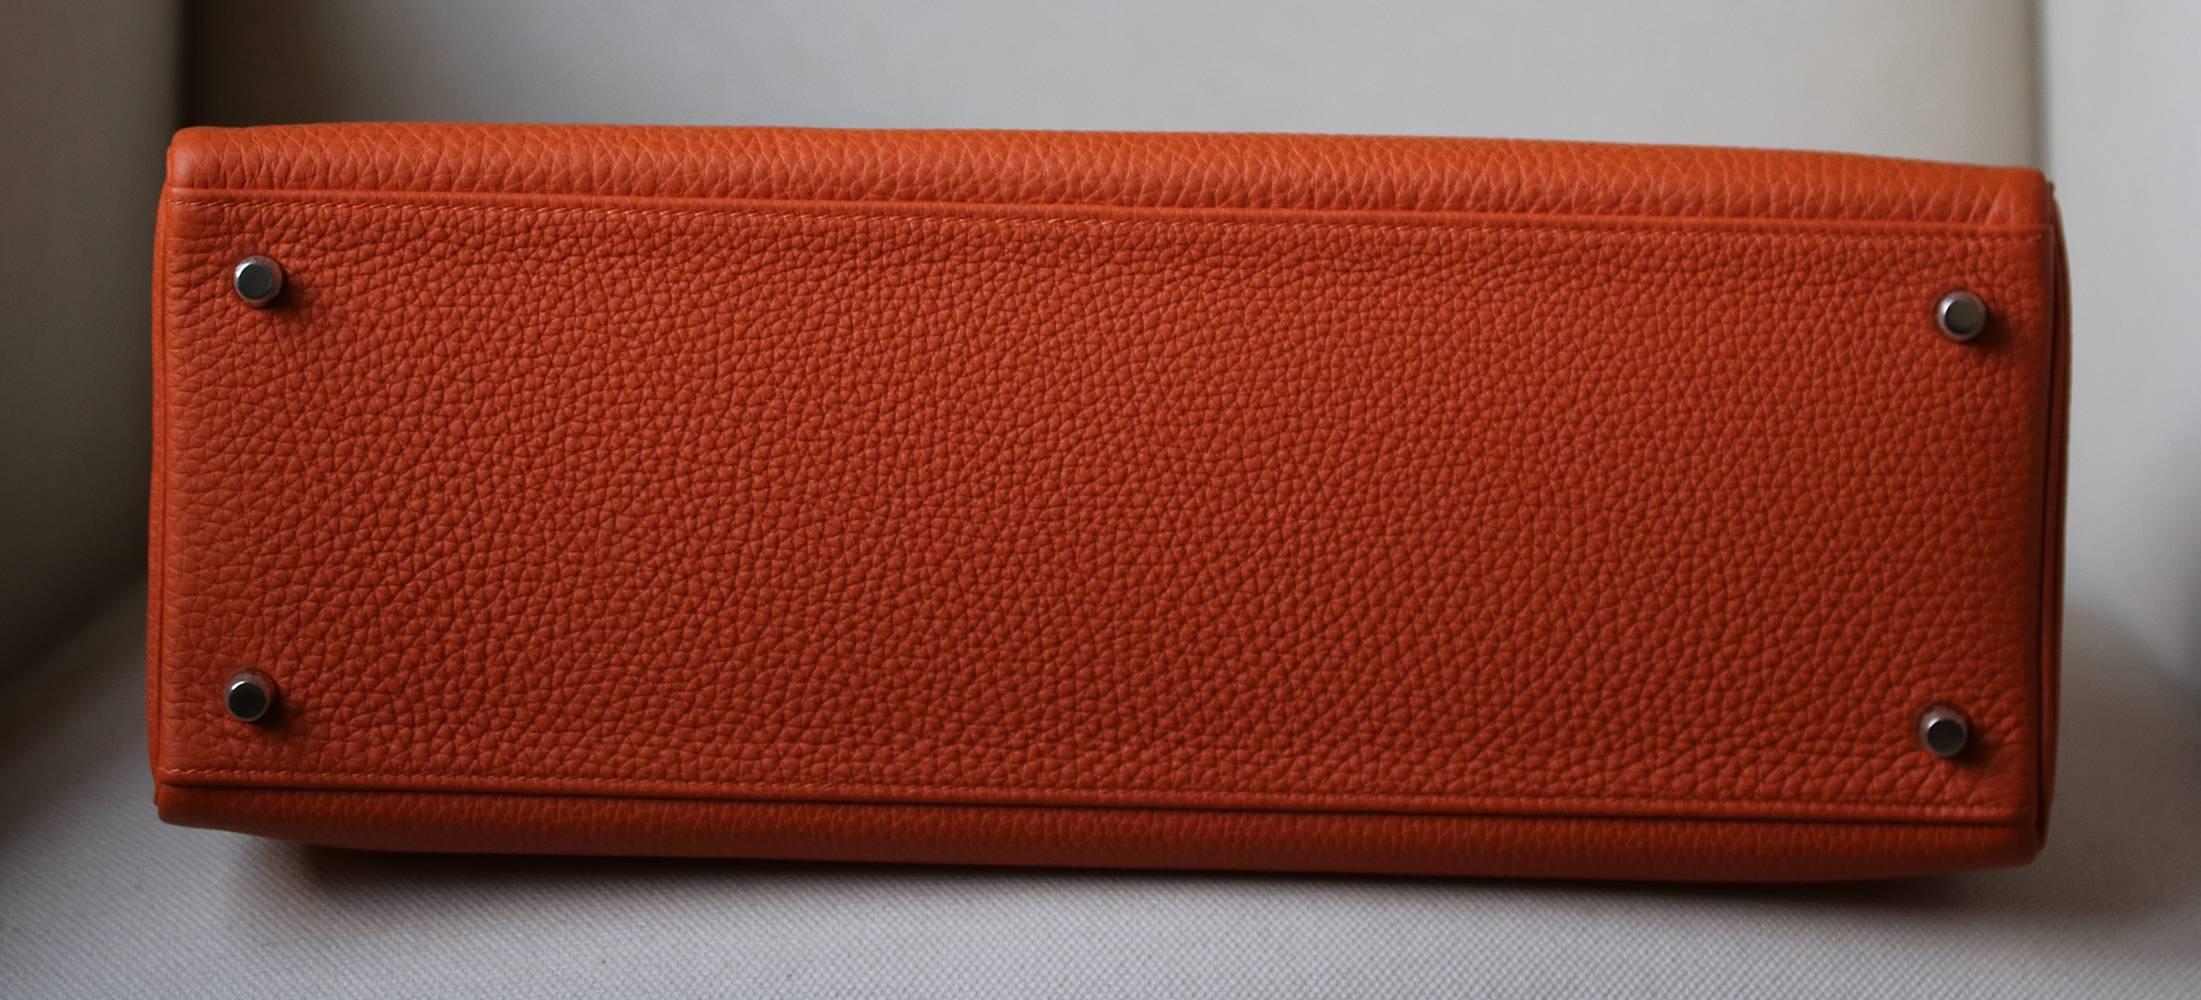 Women's or Men's Hermès 40cm Orange With Palladium Hardware Kelly Bag